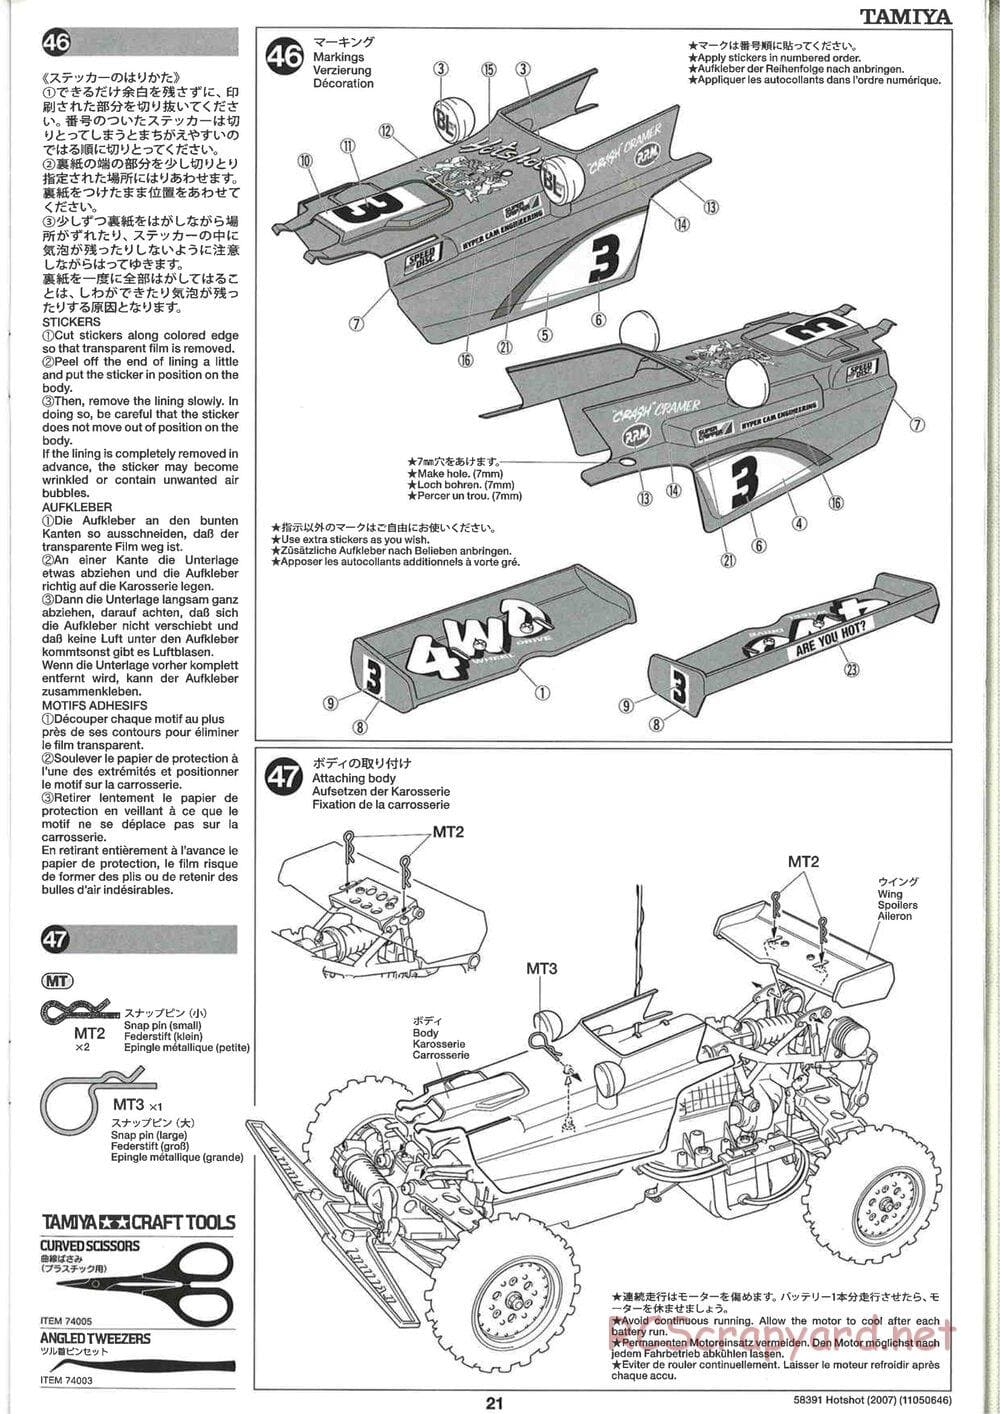 Tamiya - Hotshot - 2007 - HS Chassis - Manual - Page 21